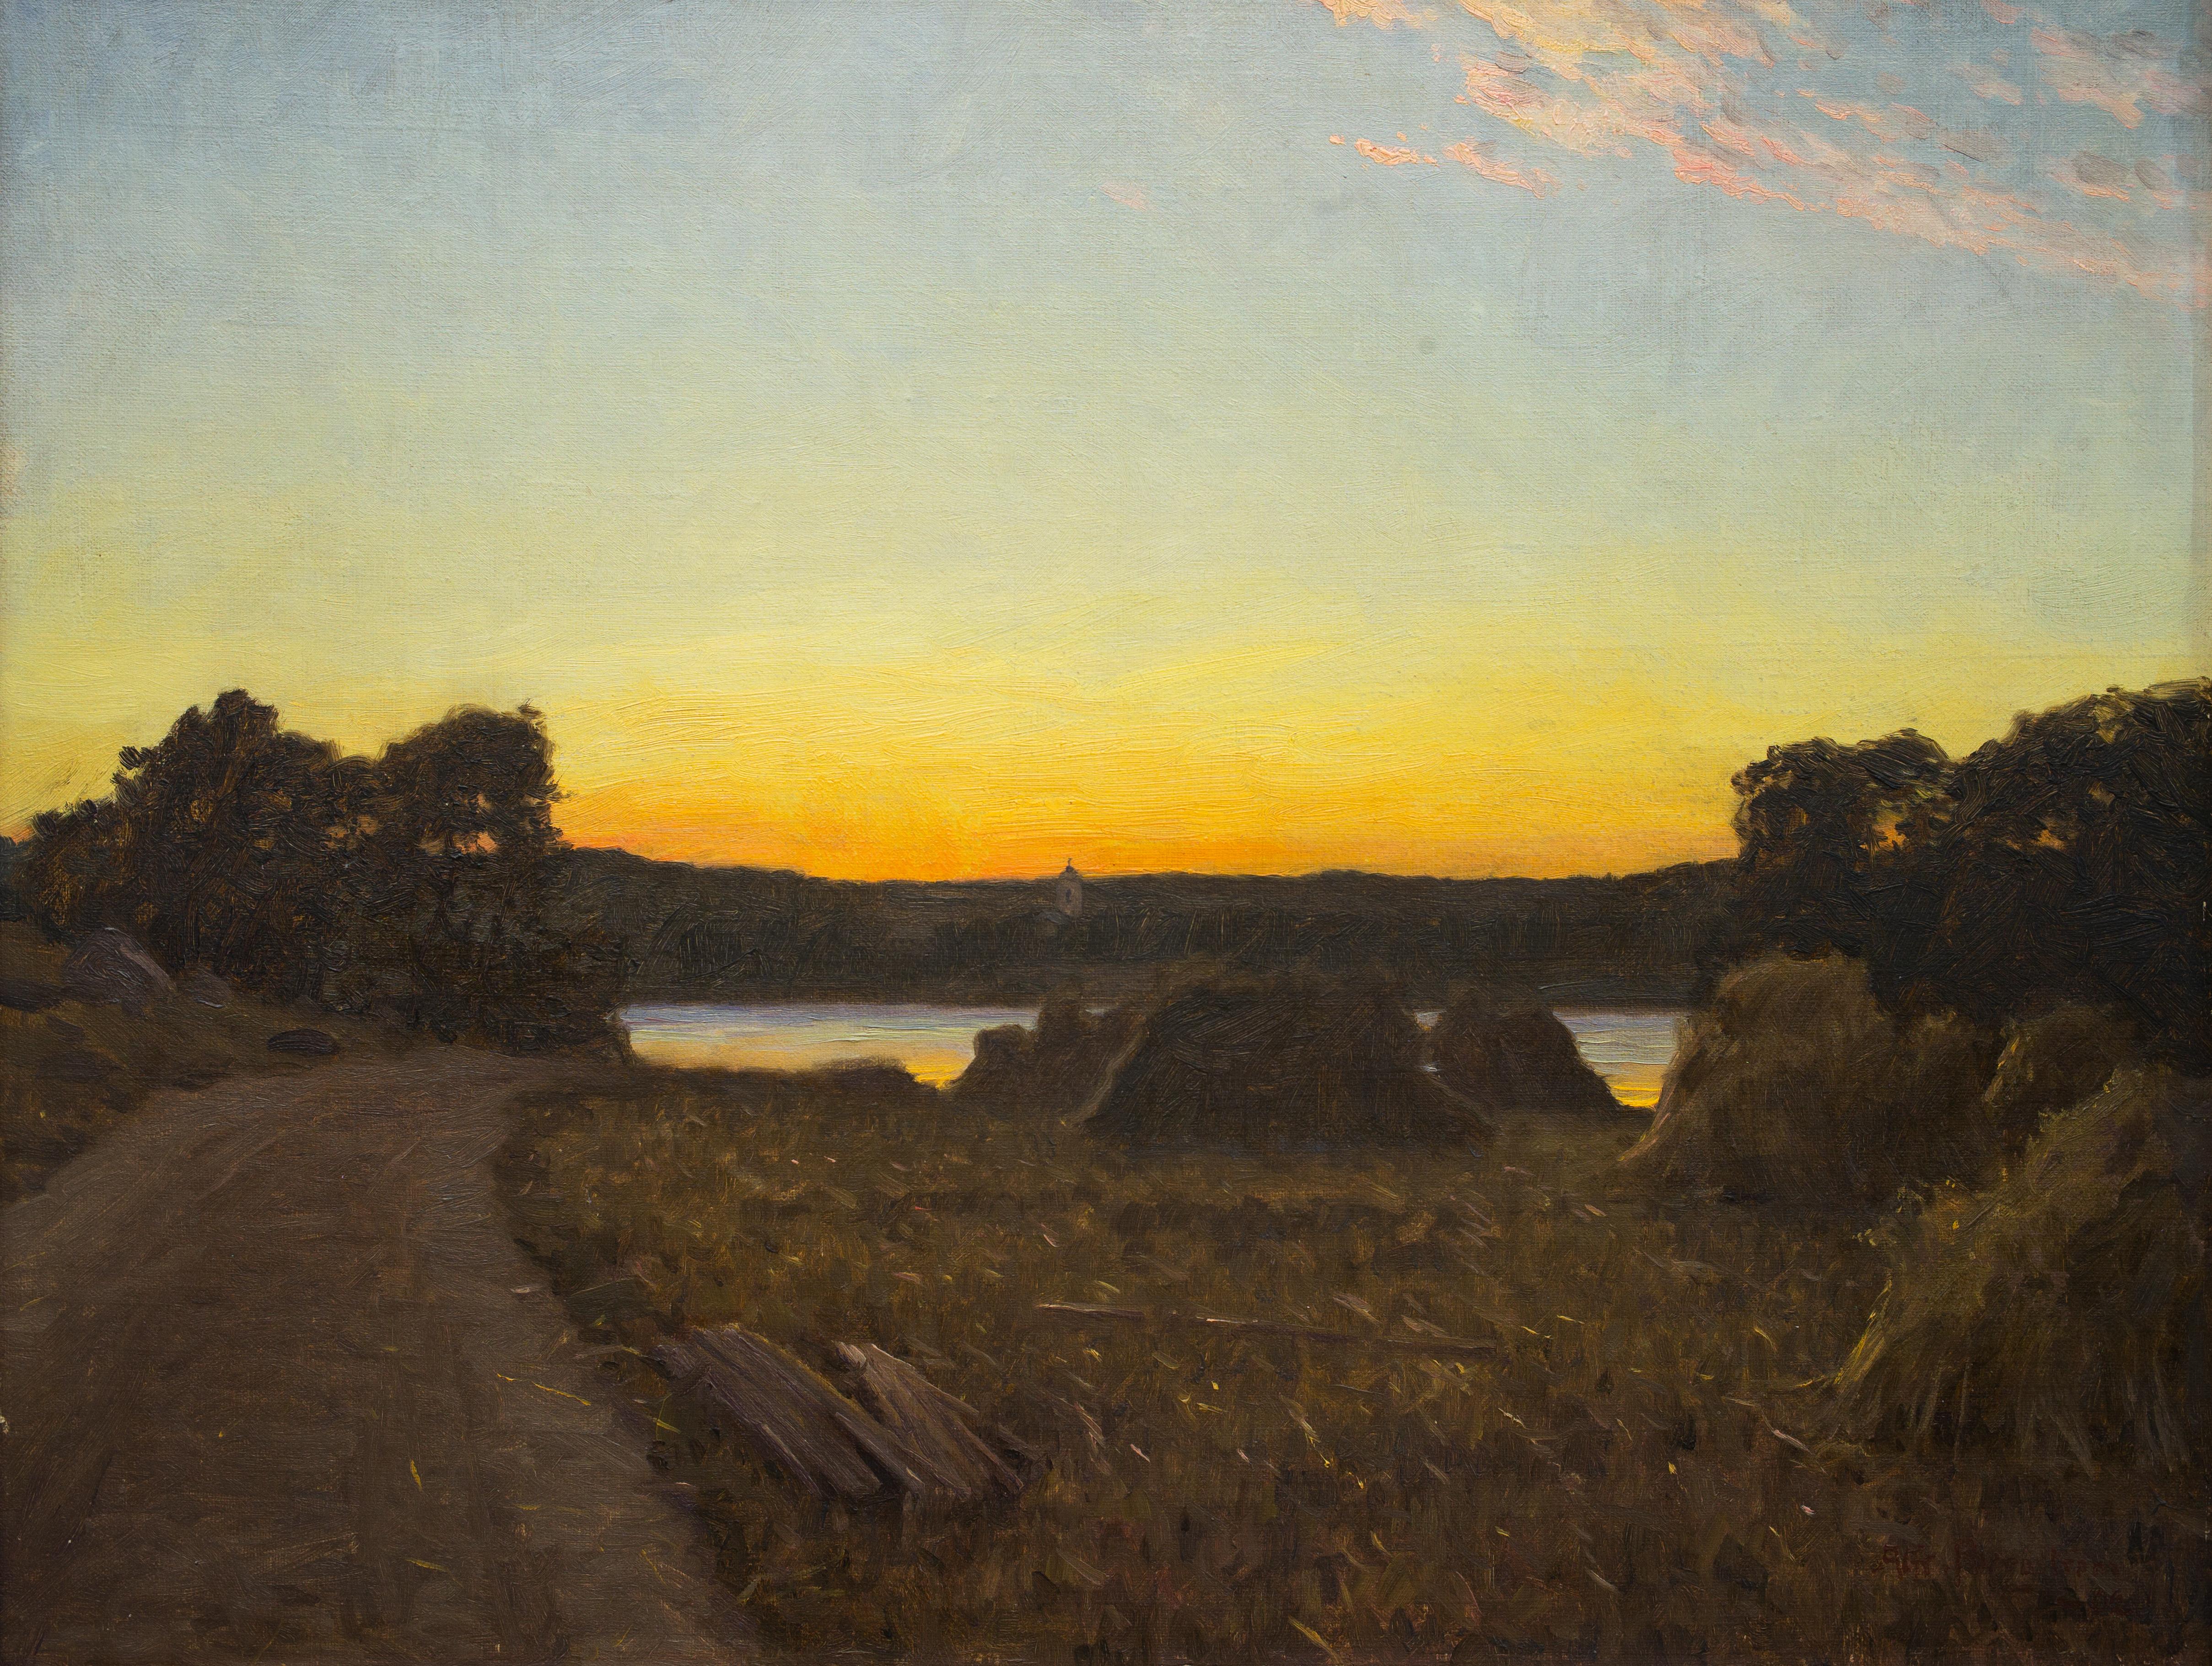 Alfred Bergström (1869 - 1930) war ein bekannter schwedischer Künstler und Professor an der Akademie der Schönen Künste in Stockholm. Er verfeinerte seine künstlerischen Fähigkeiten durch Studien sowohl in Schweden als auch in Frankreich, unter